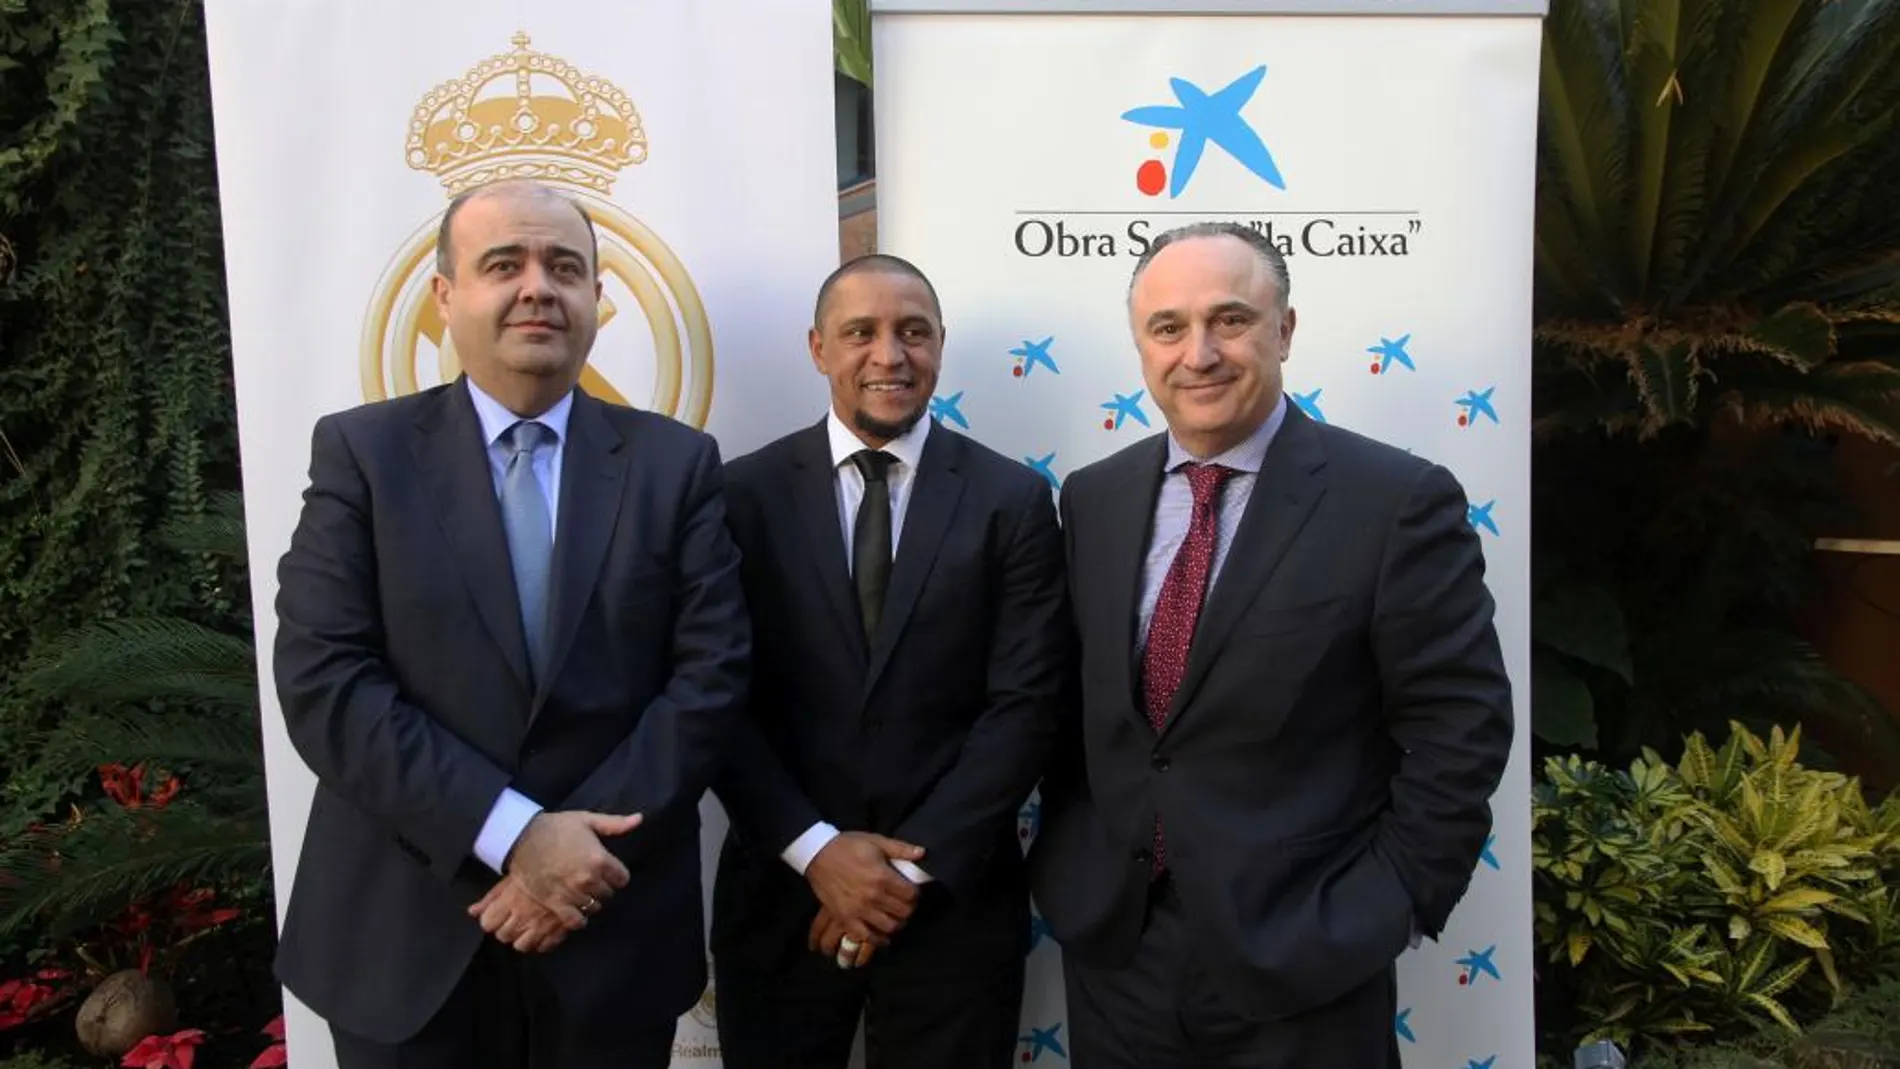 La Fundación Real Madrid y la Obra Social “la Caixa” desarrollan proyectos socio-deportivos desde hace más de cinco años